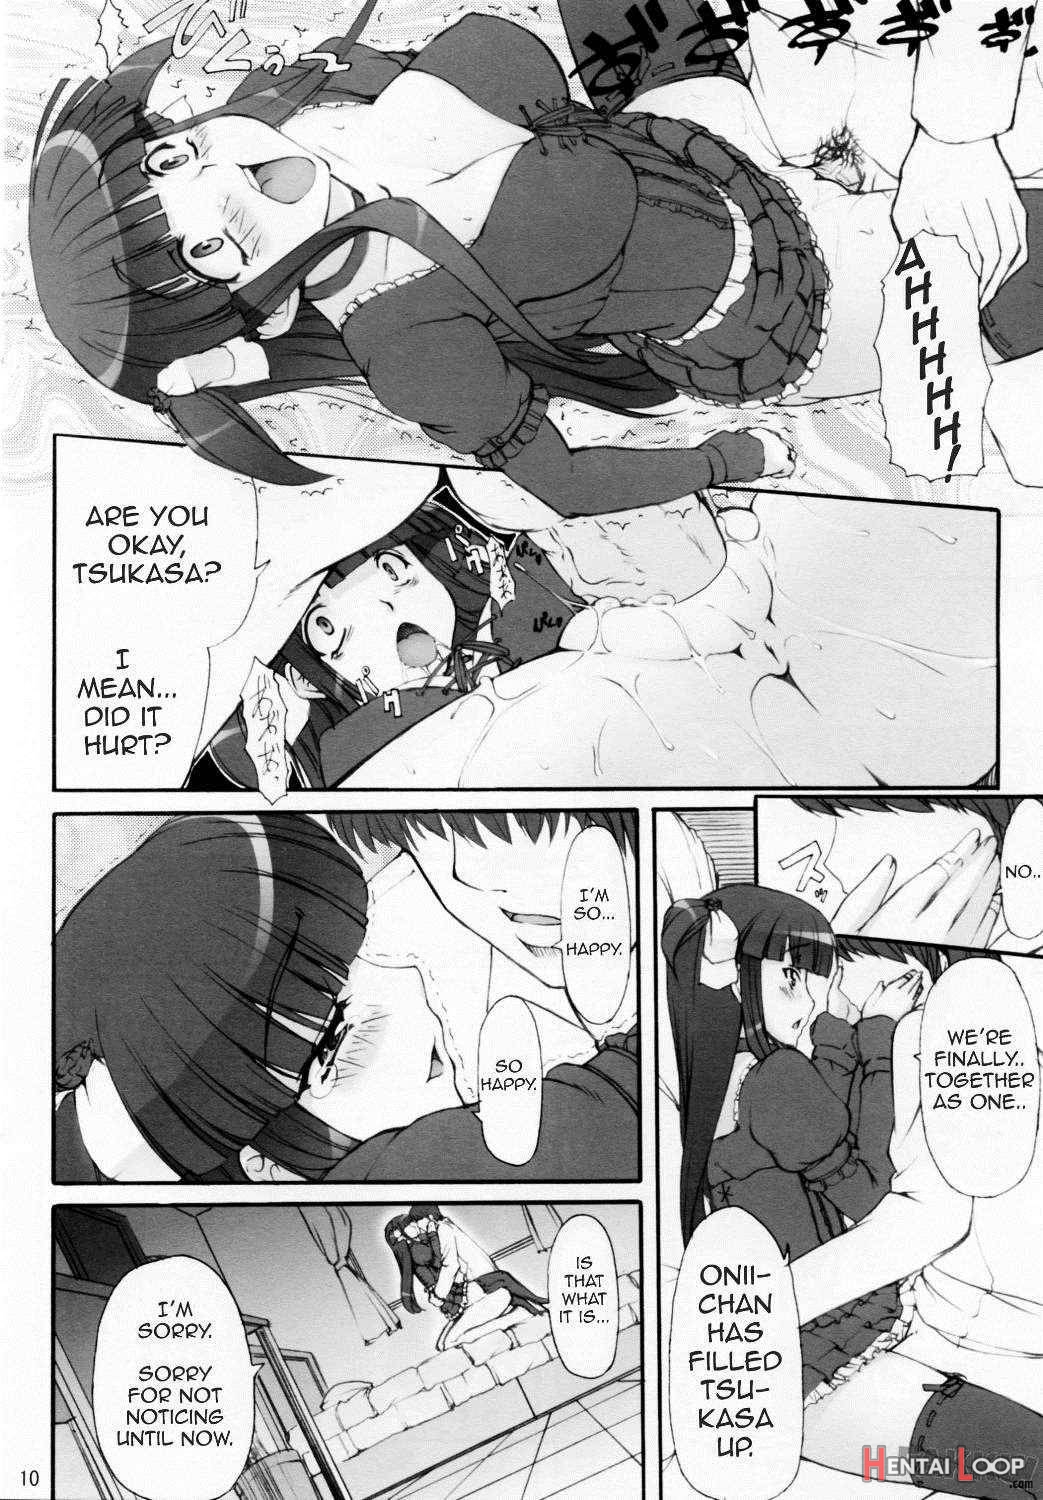 Tsukasa Valentine Dream page 10